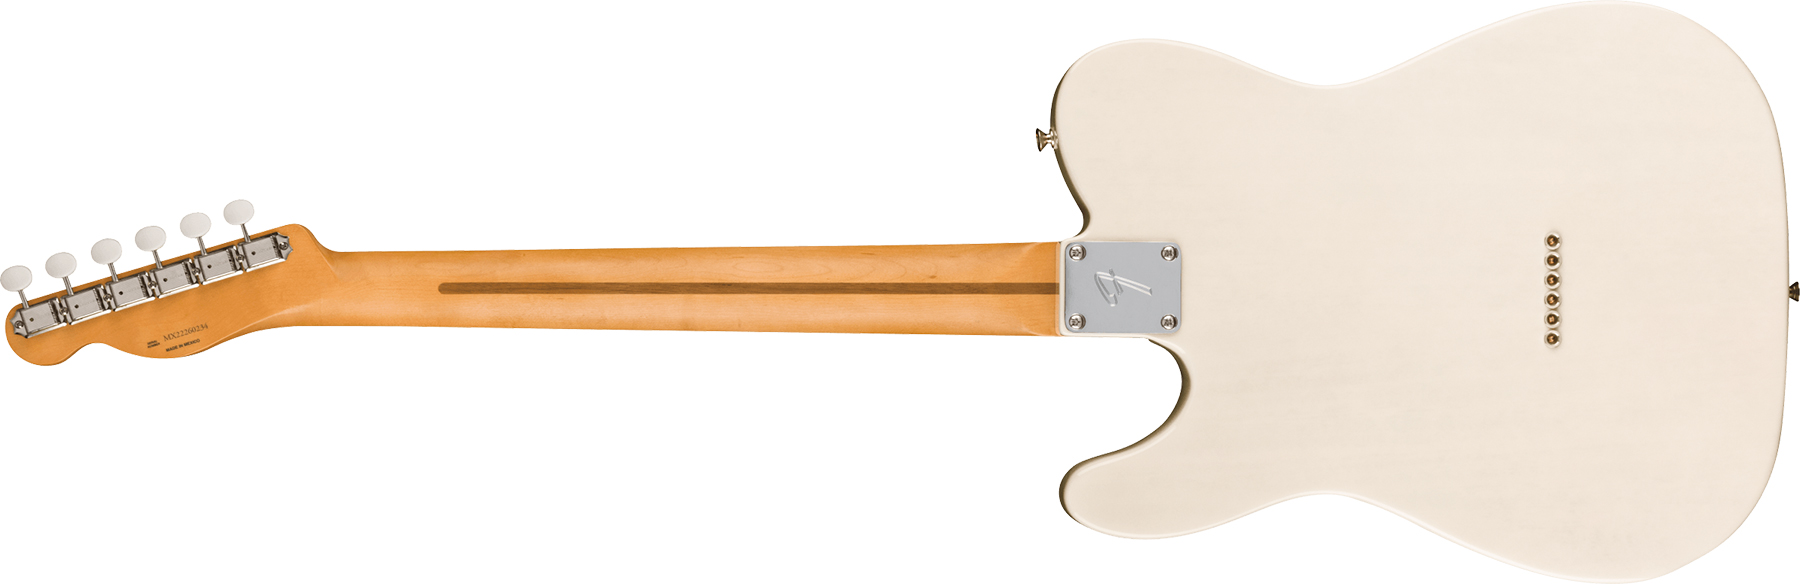 Fender Tele Gold Foil Ltd Mex 2mh Ht Eb - White Blonde - E-Gitarre in Teleform - Variation 1